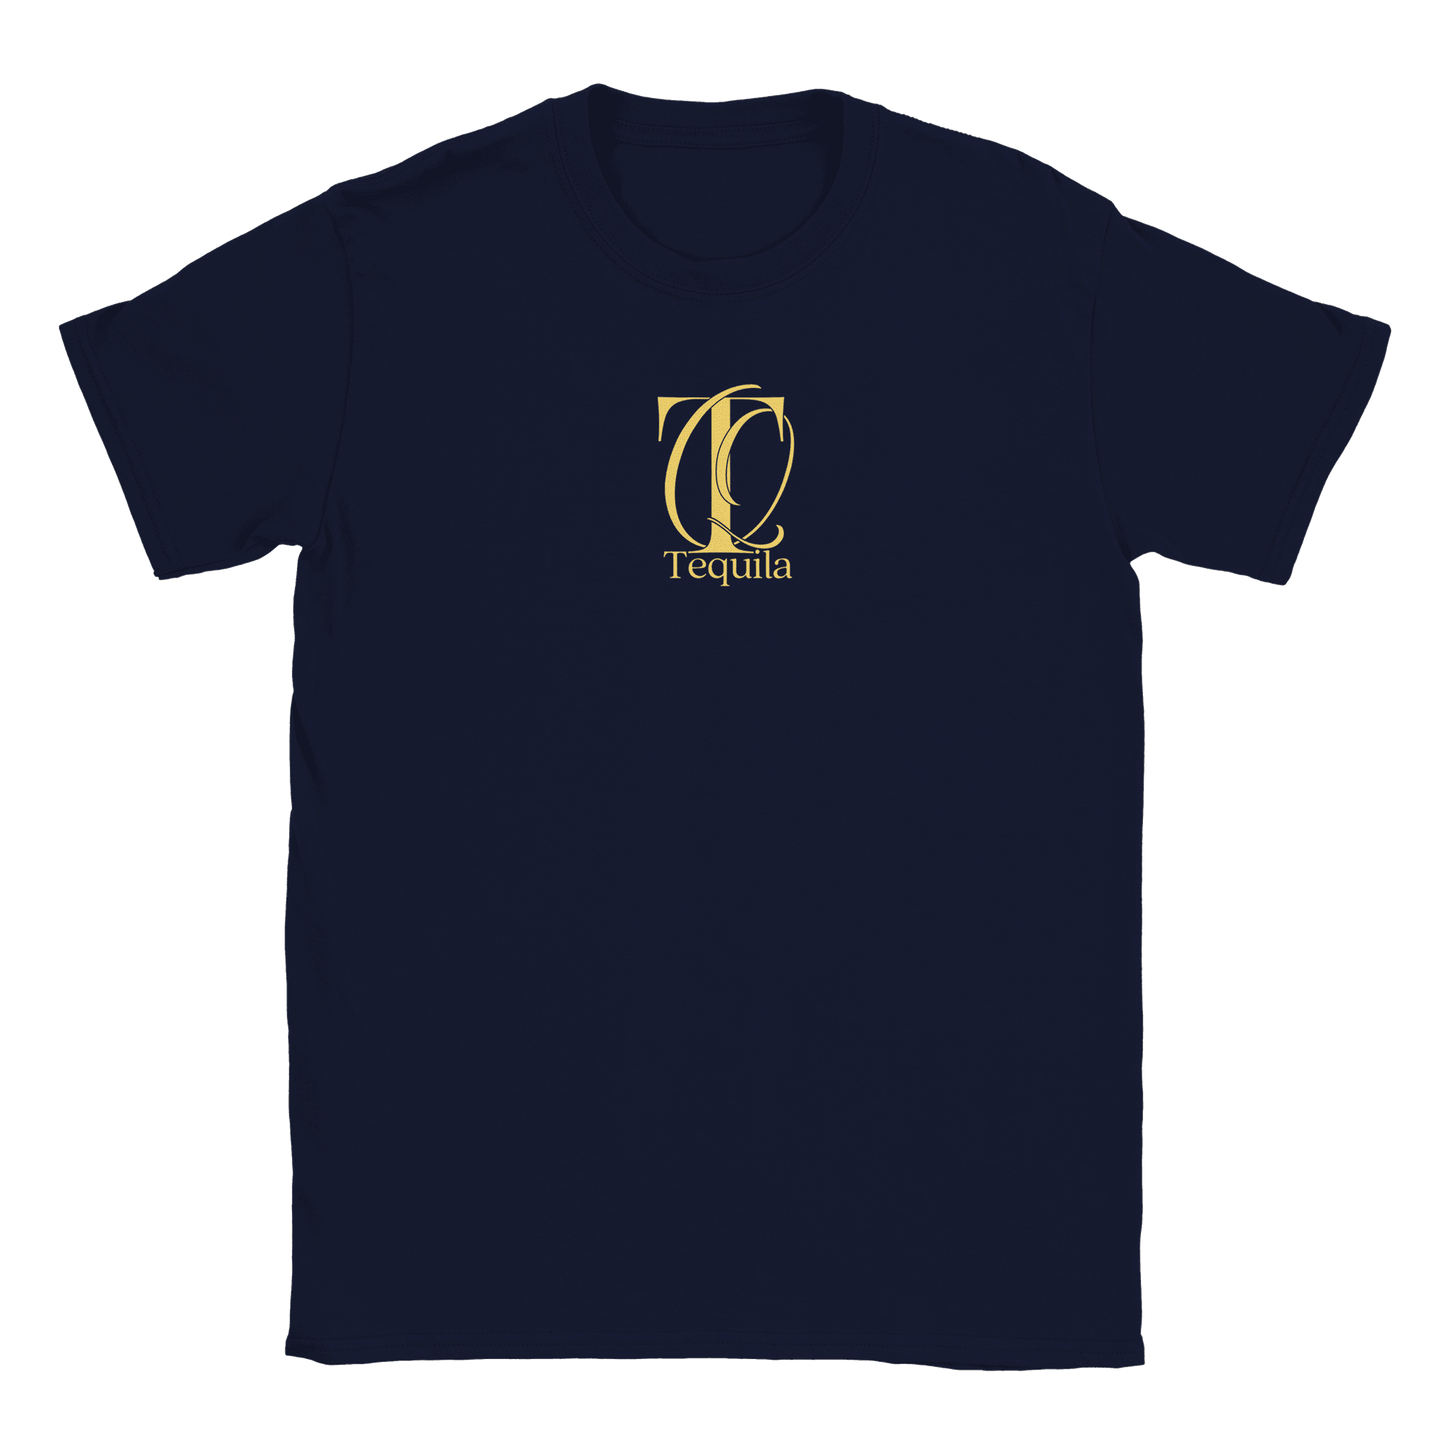 Tequila - T-shirt Marinblå